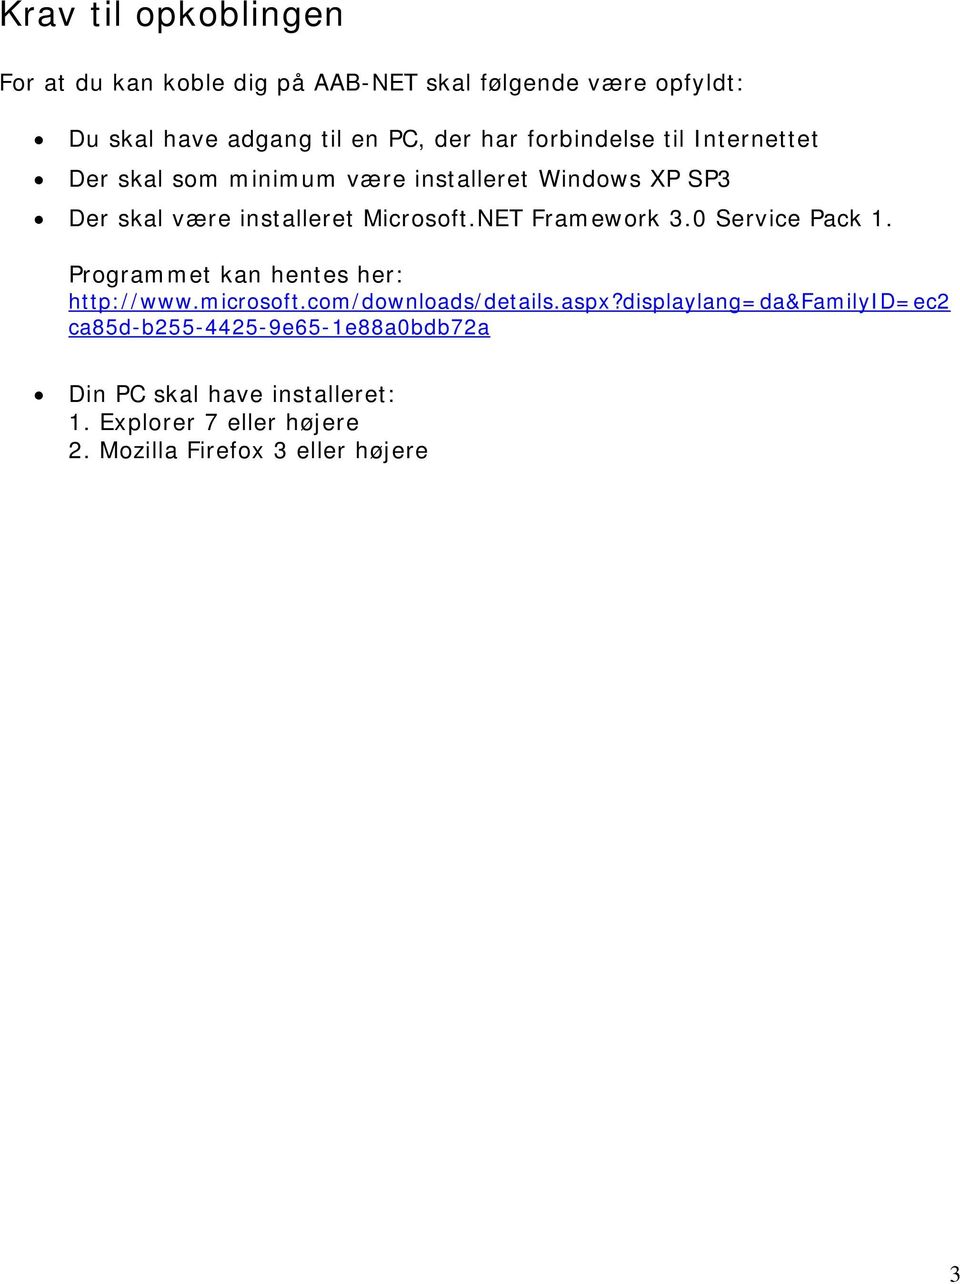 NET Framework 3.0 Service Pack 1. Programmet kan hentes her: http://www.microsoft.com/downloads/details.aspx?